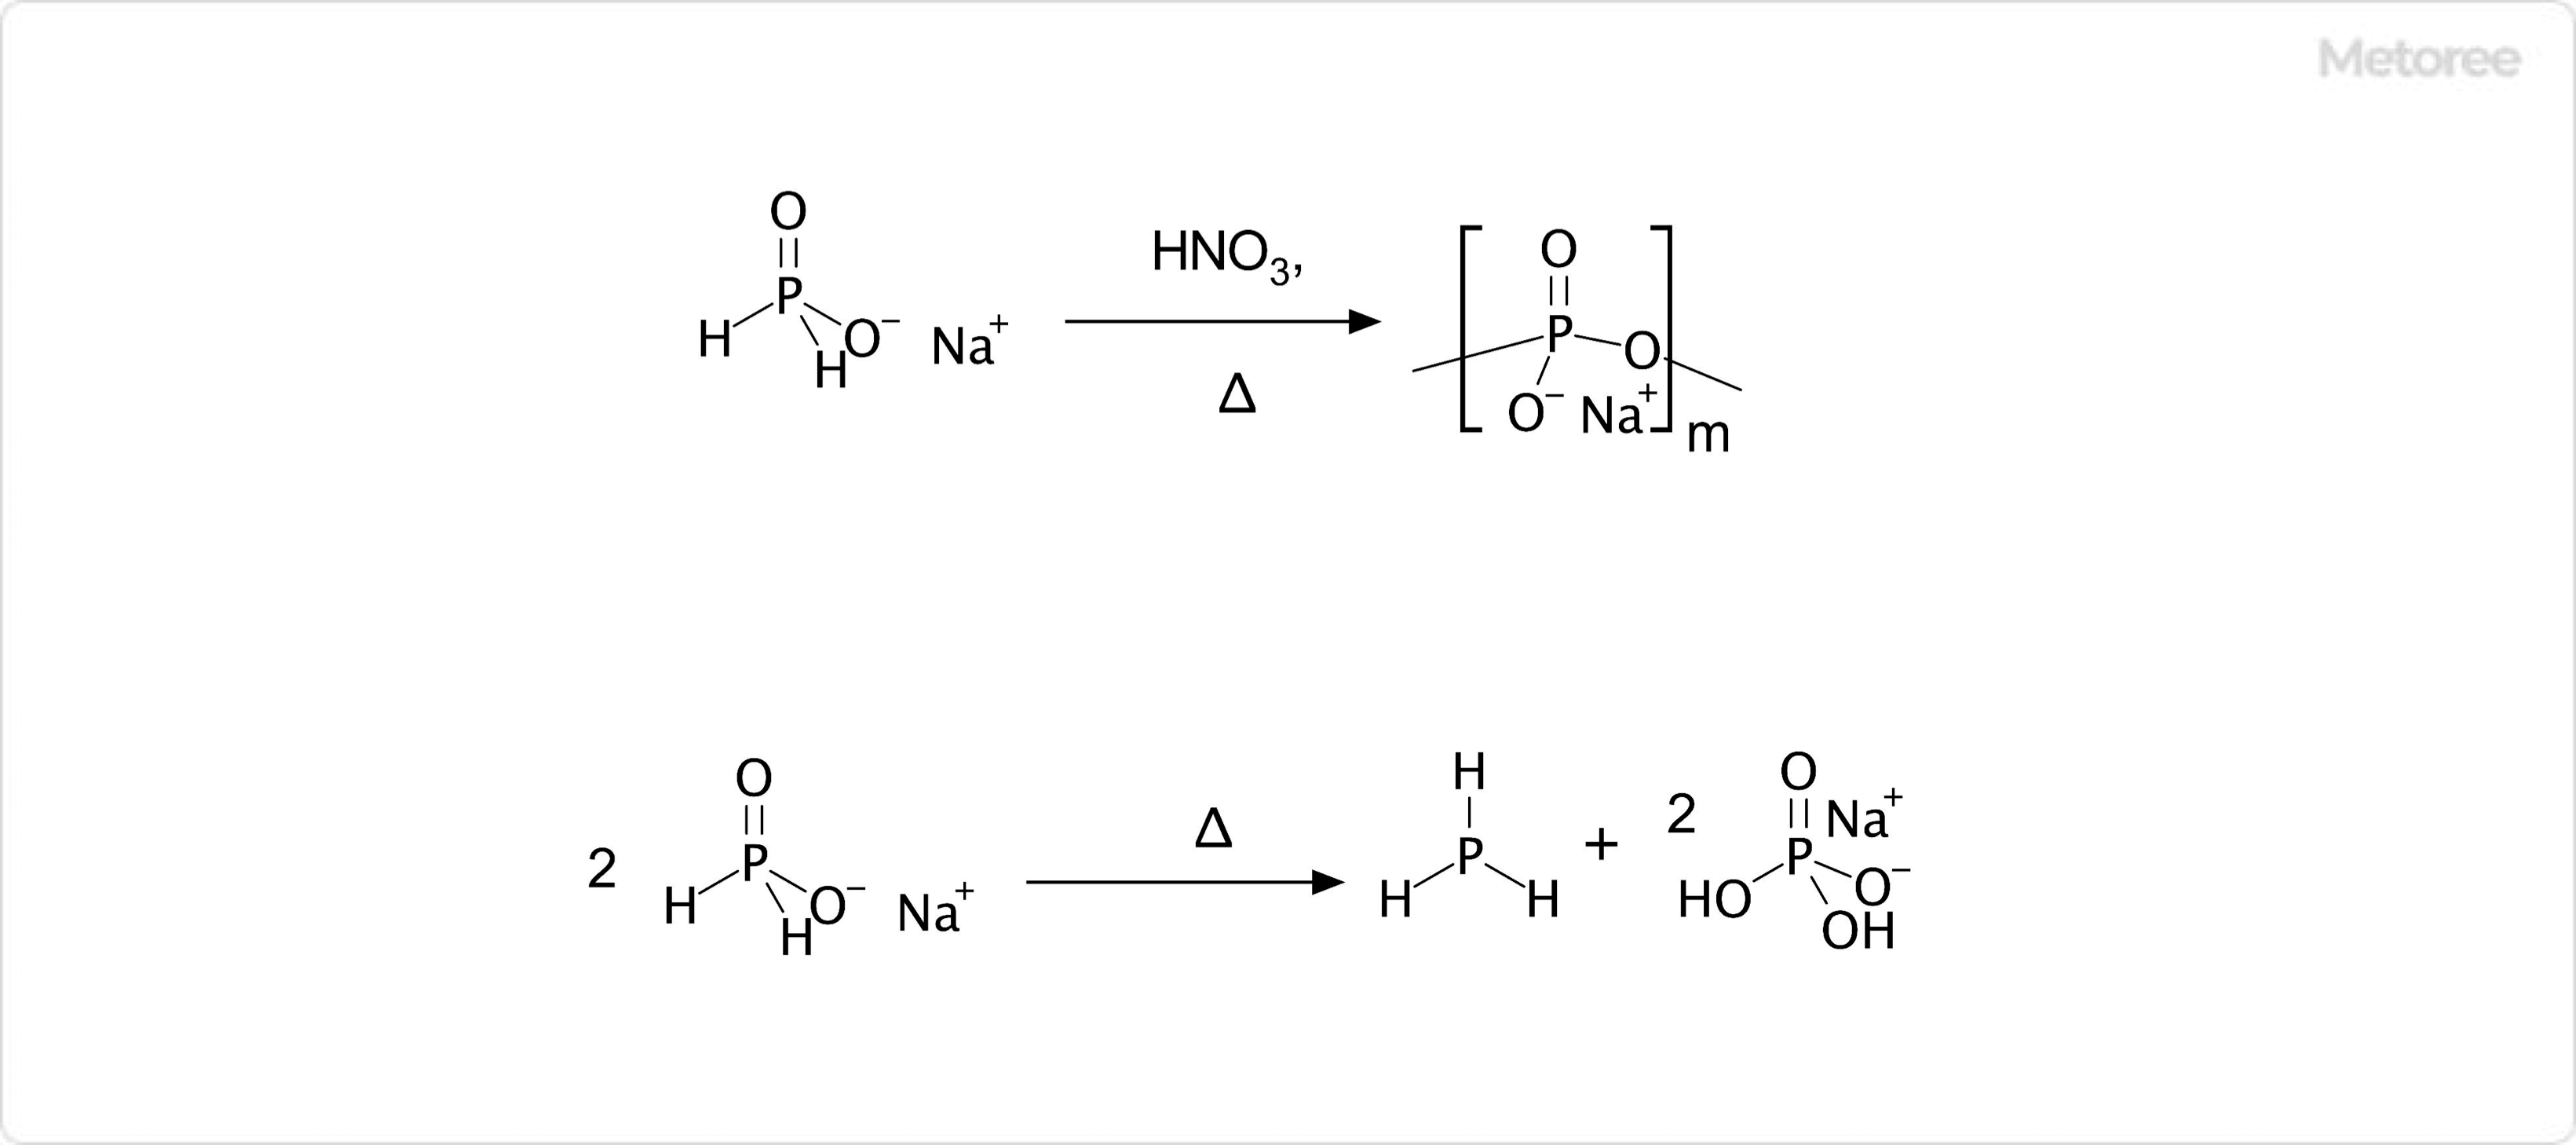 次亜リン酸ナトリウムと硝酸の化学反応 (上) と、次亜リン酸ナトリウムの熱分解 (下)